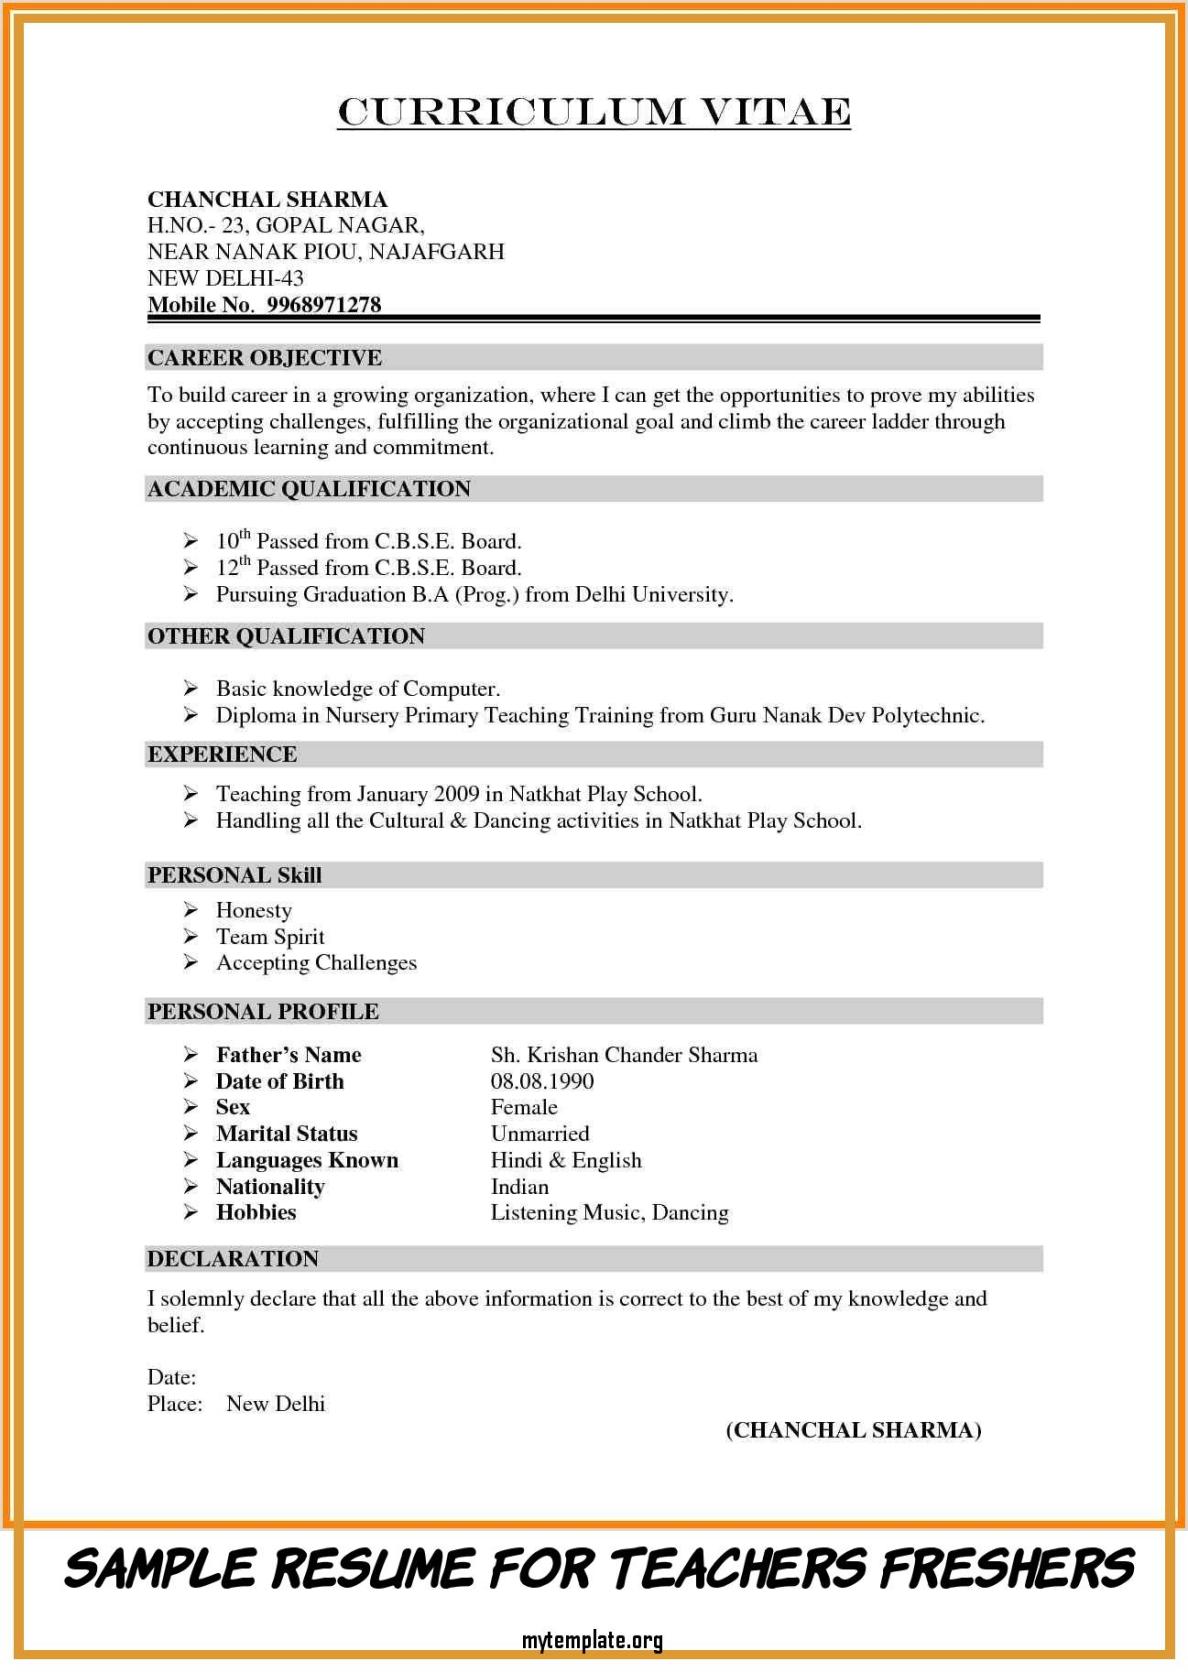 Sample Resume for Teachers Freshers Of Resume format for Teachers ...